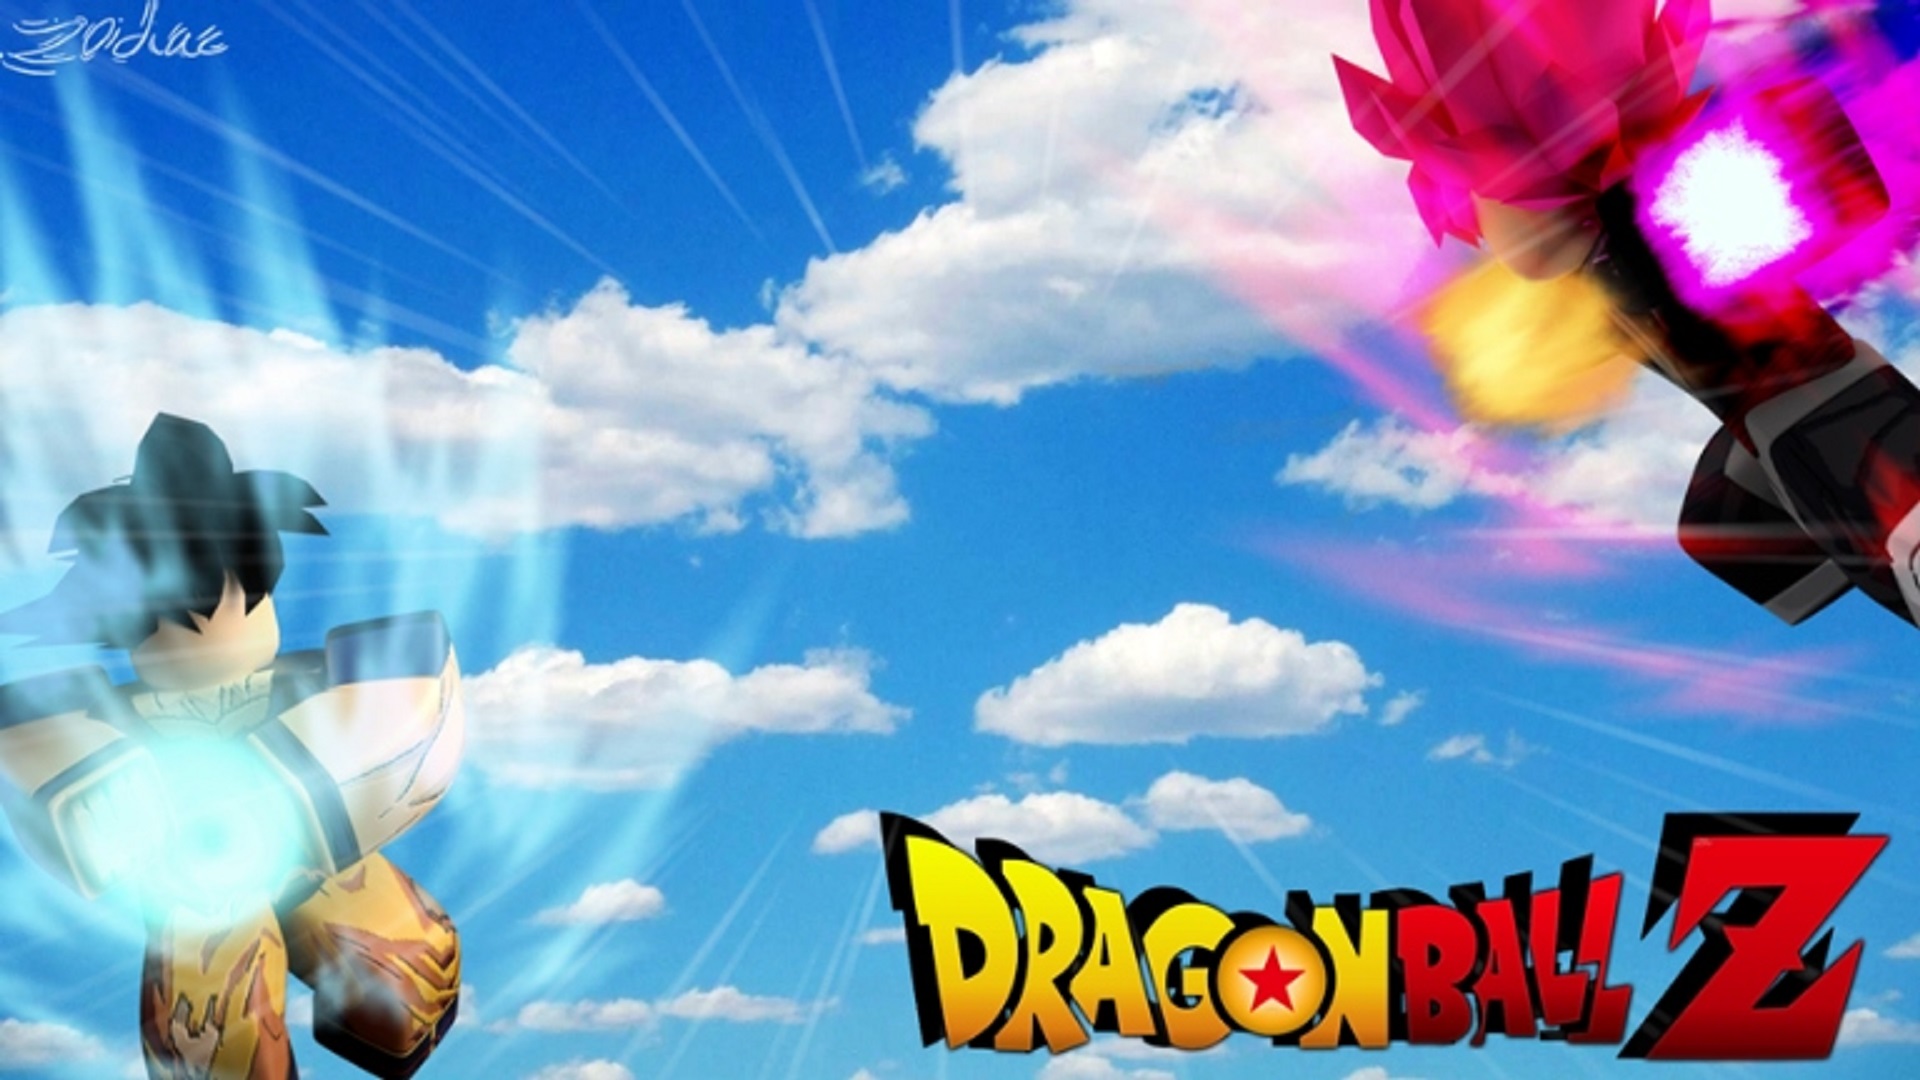 Dragon Ball Rage Codes Free Zenkai Xp And Stats Pocket Tactics - roblox dragon ball zenkai burst